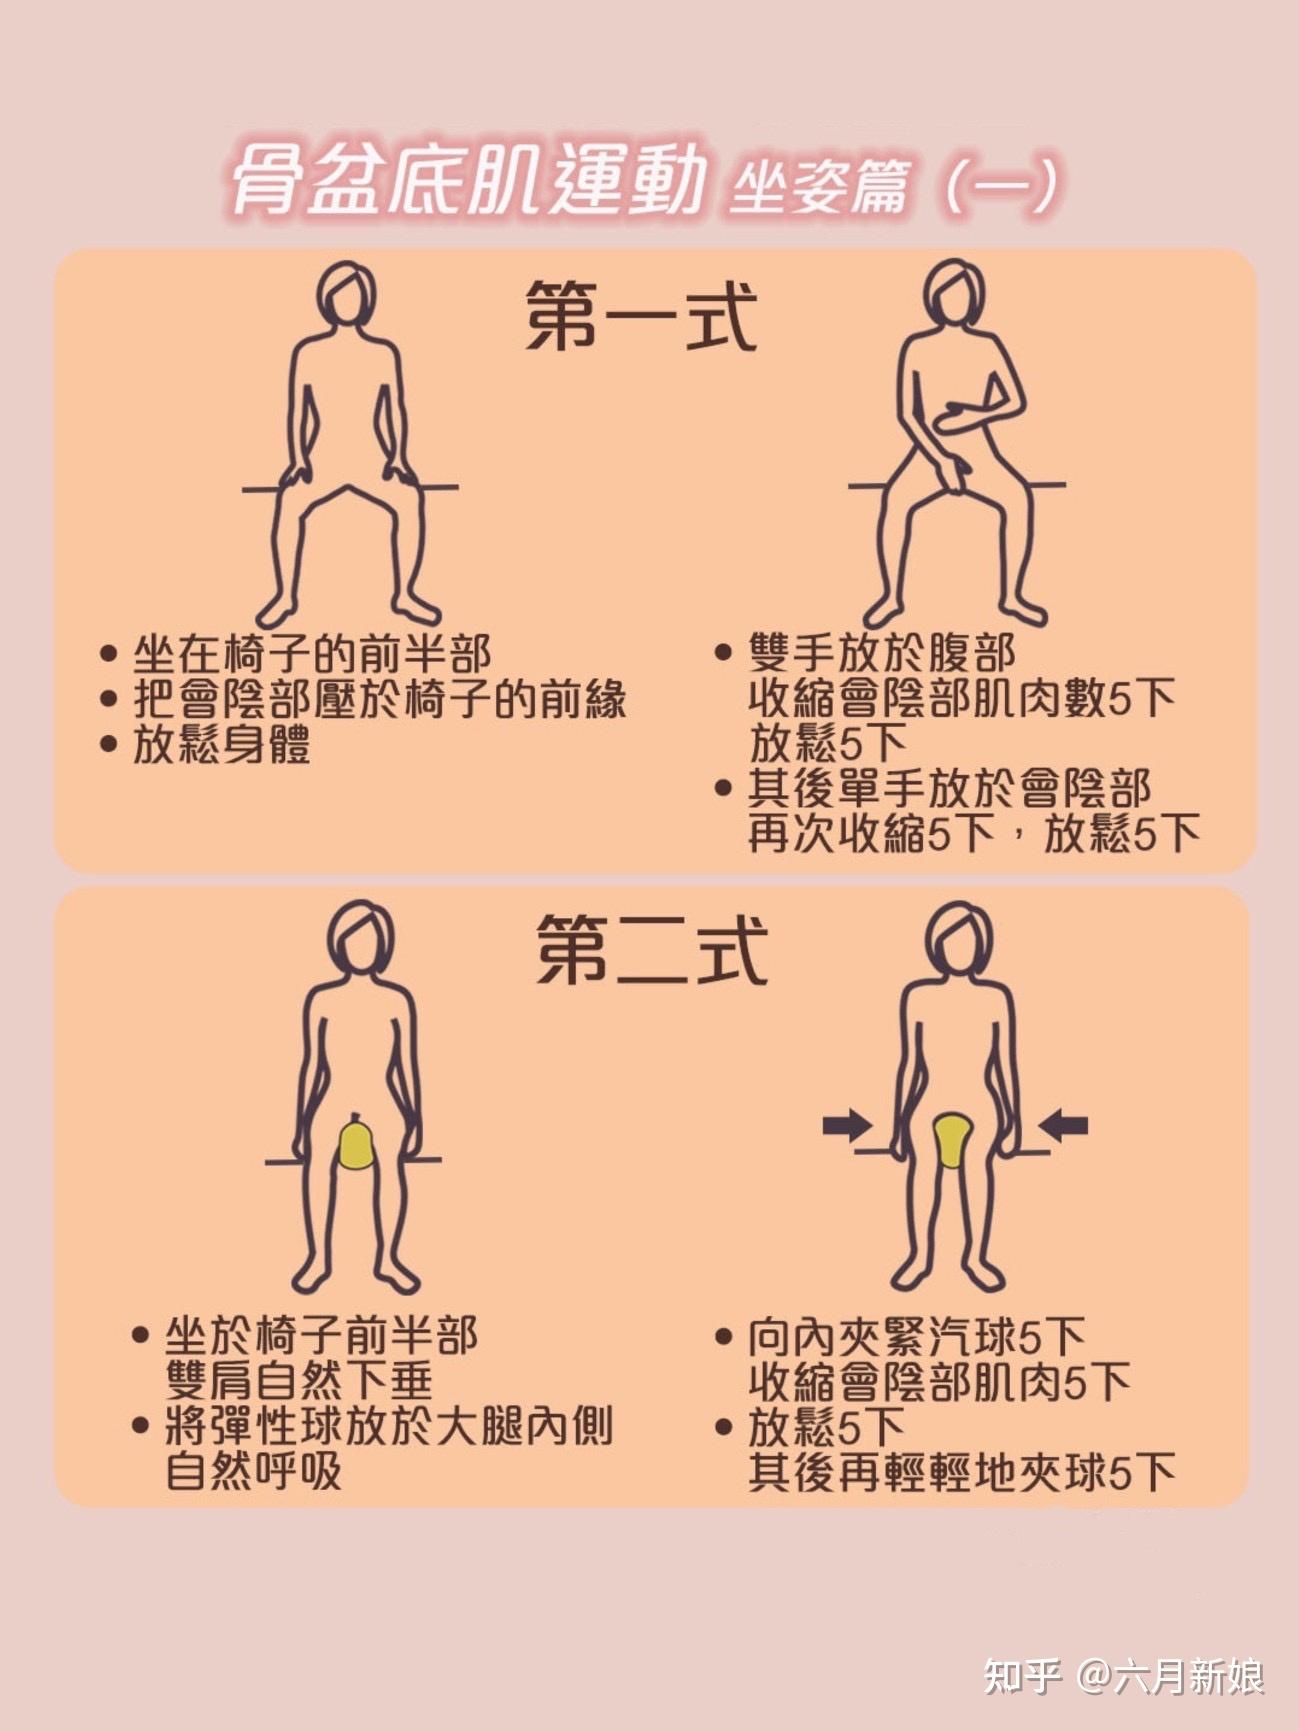 具体详细的运动方法可以看图片(2)腹式呼吸法:坐在有一定硬度平坦的